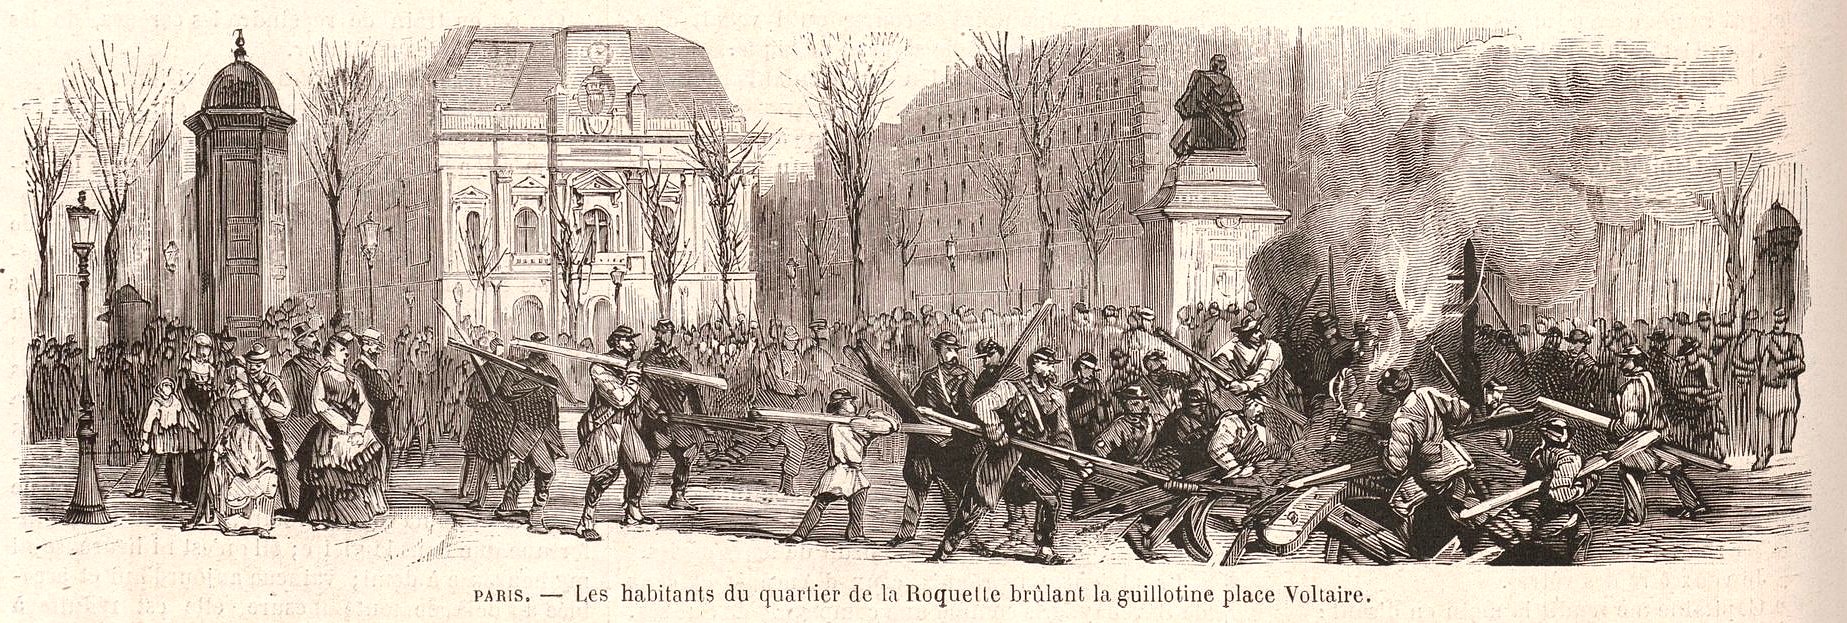 Gravure « Le Monde Illustré » du 4 avril 1871 : Les habitants du quartier de la Roquette brulant la guillotine place Voltaire